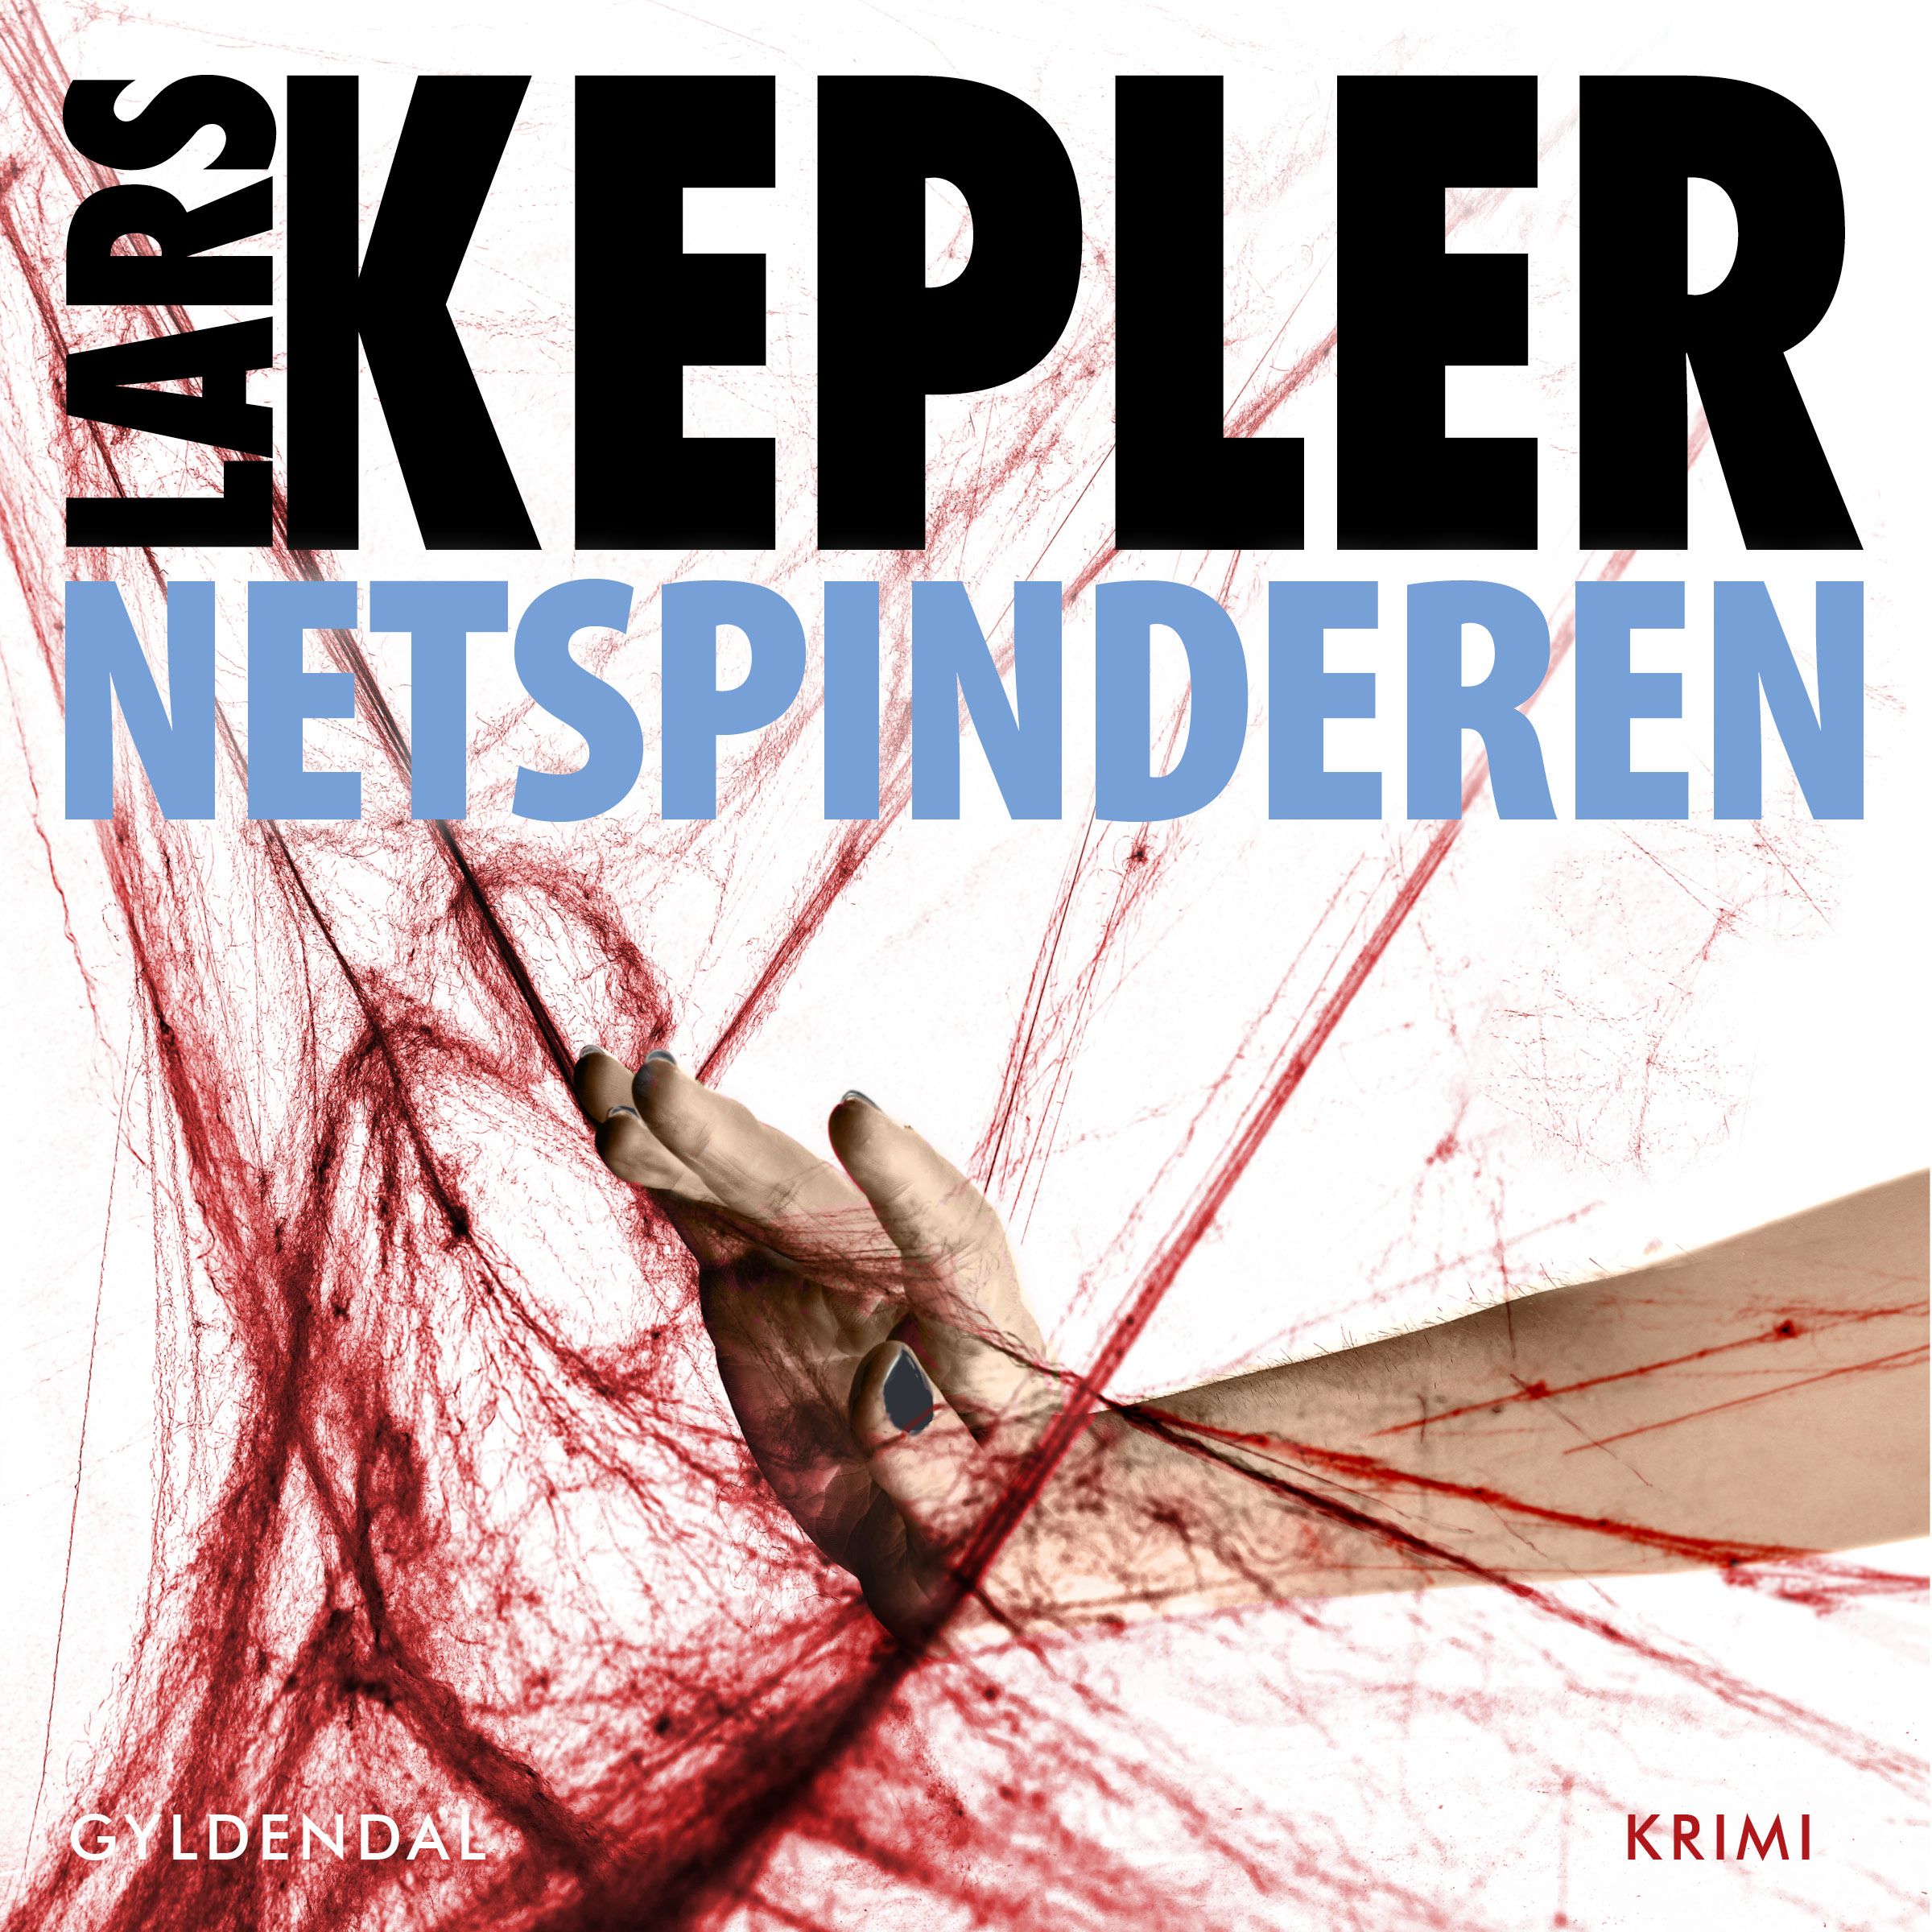 Netspinderen, lydbog af Lars Kepler